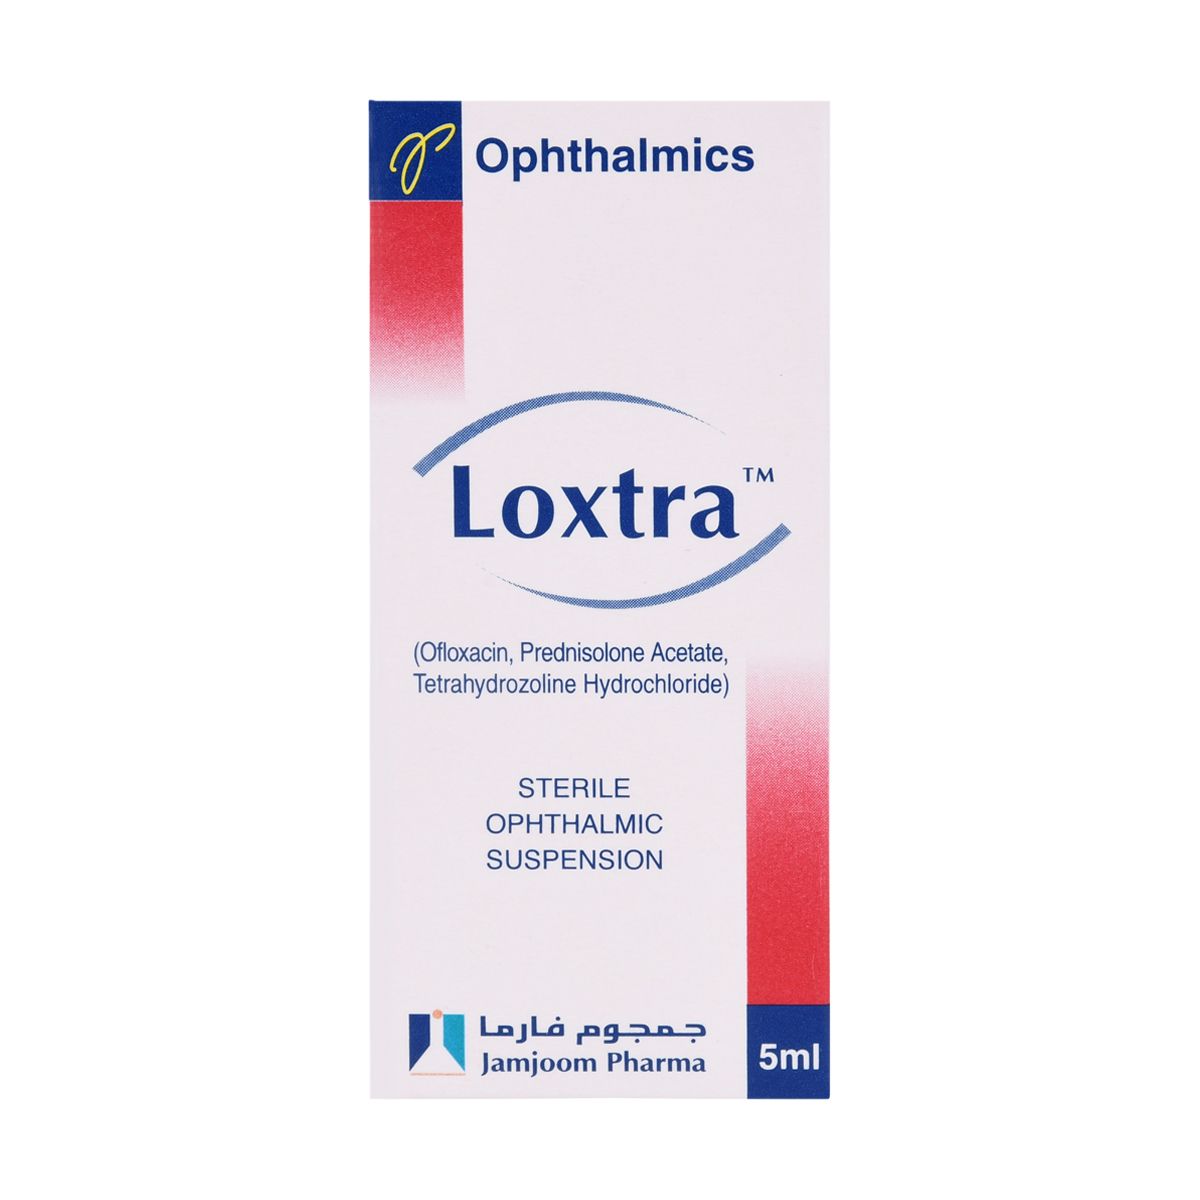 LOXTRA Loxtra eye drop 5ml